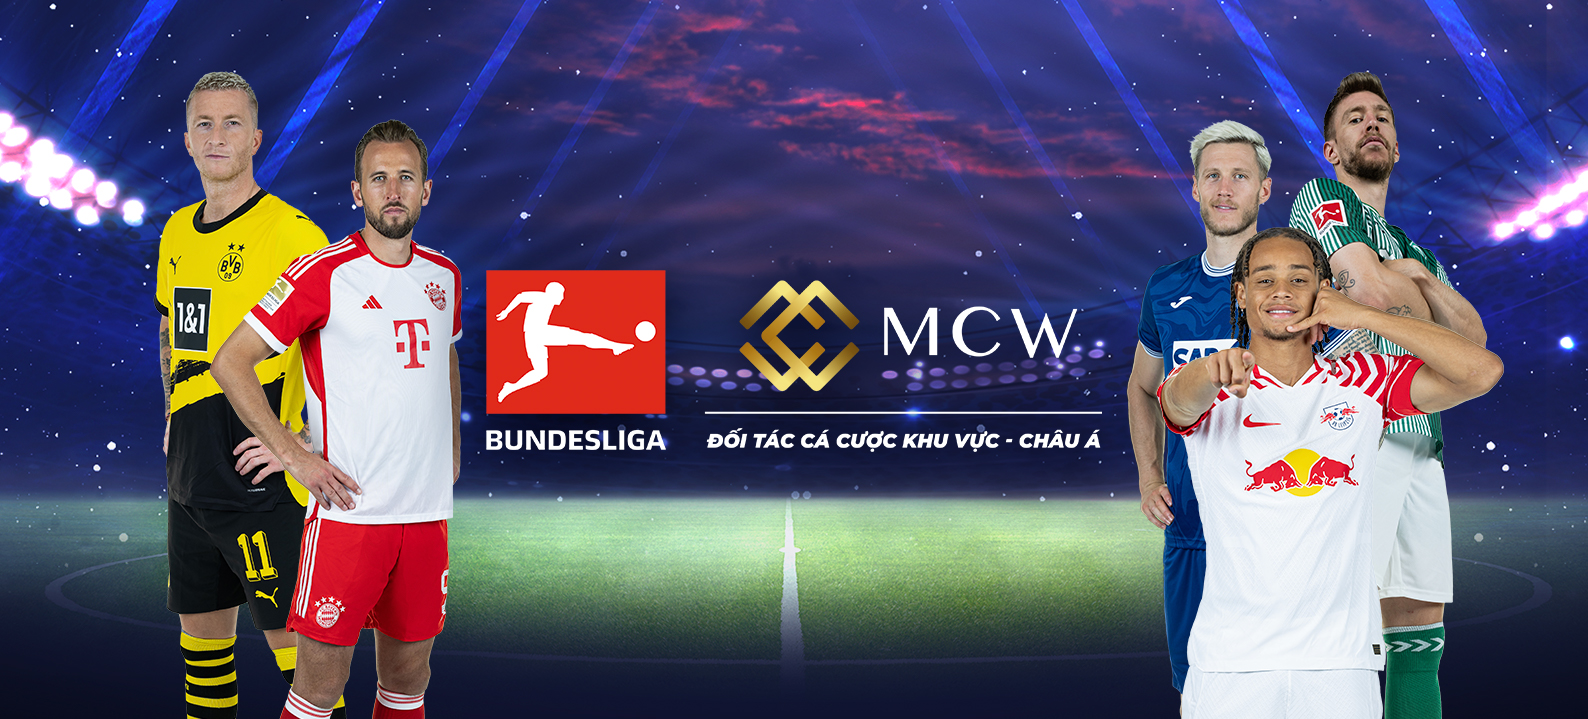 Bundesliga International hợp tác với Mega Casino World ở Châu Á